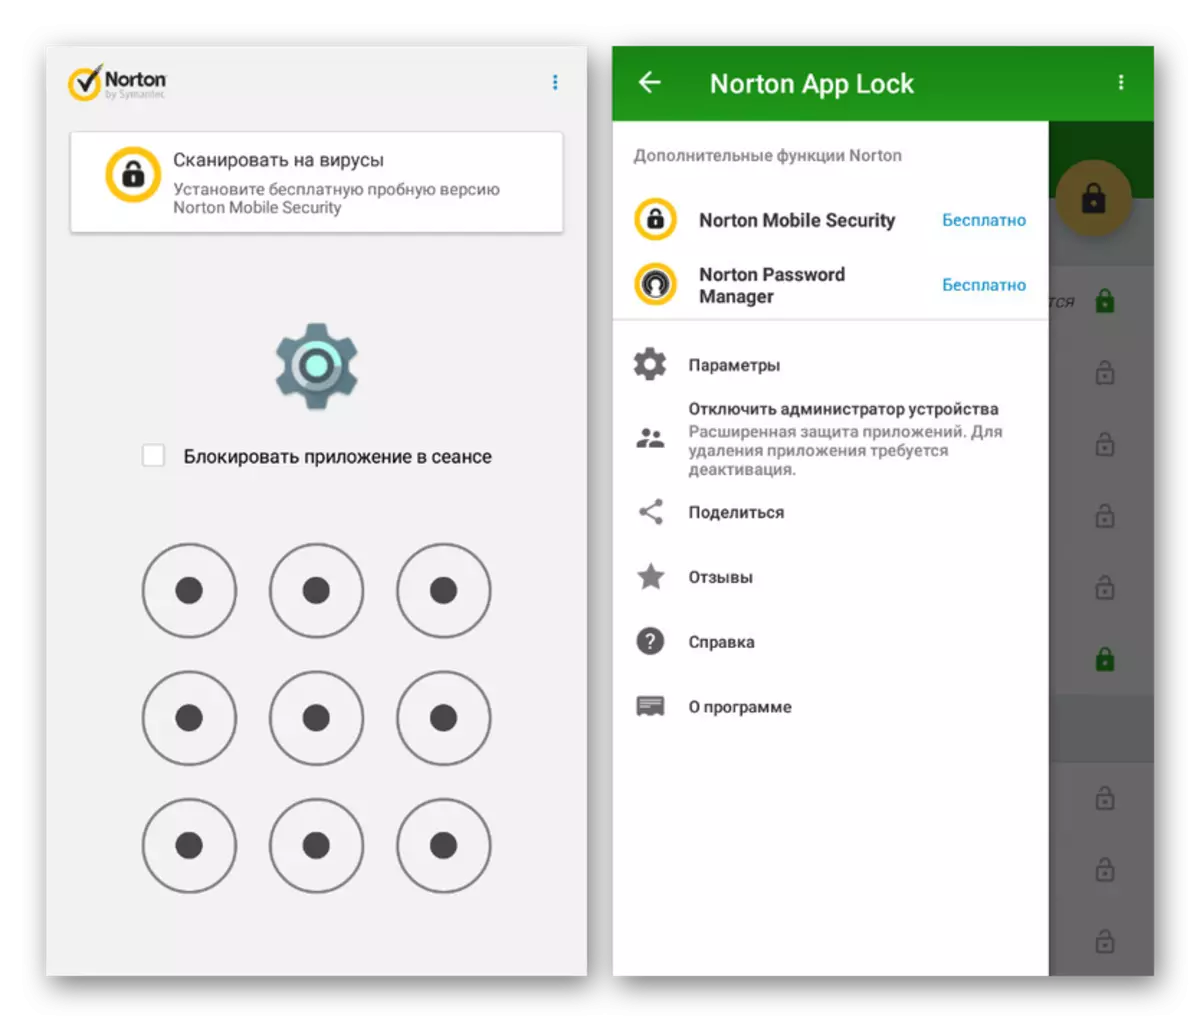 การยืนยันใน Norton App Lock บน Android